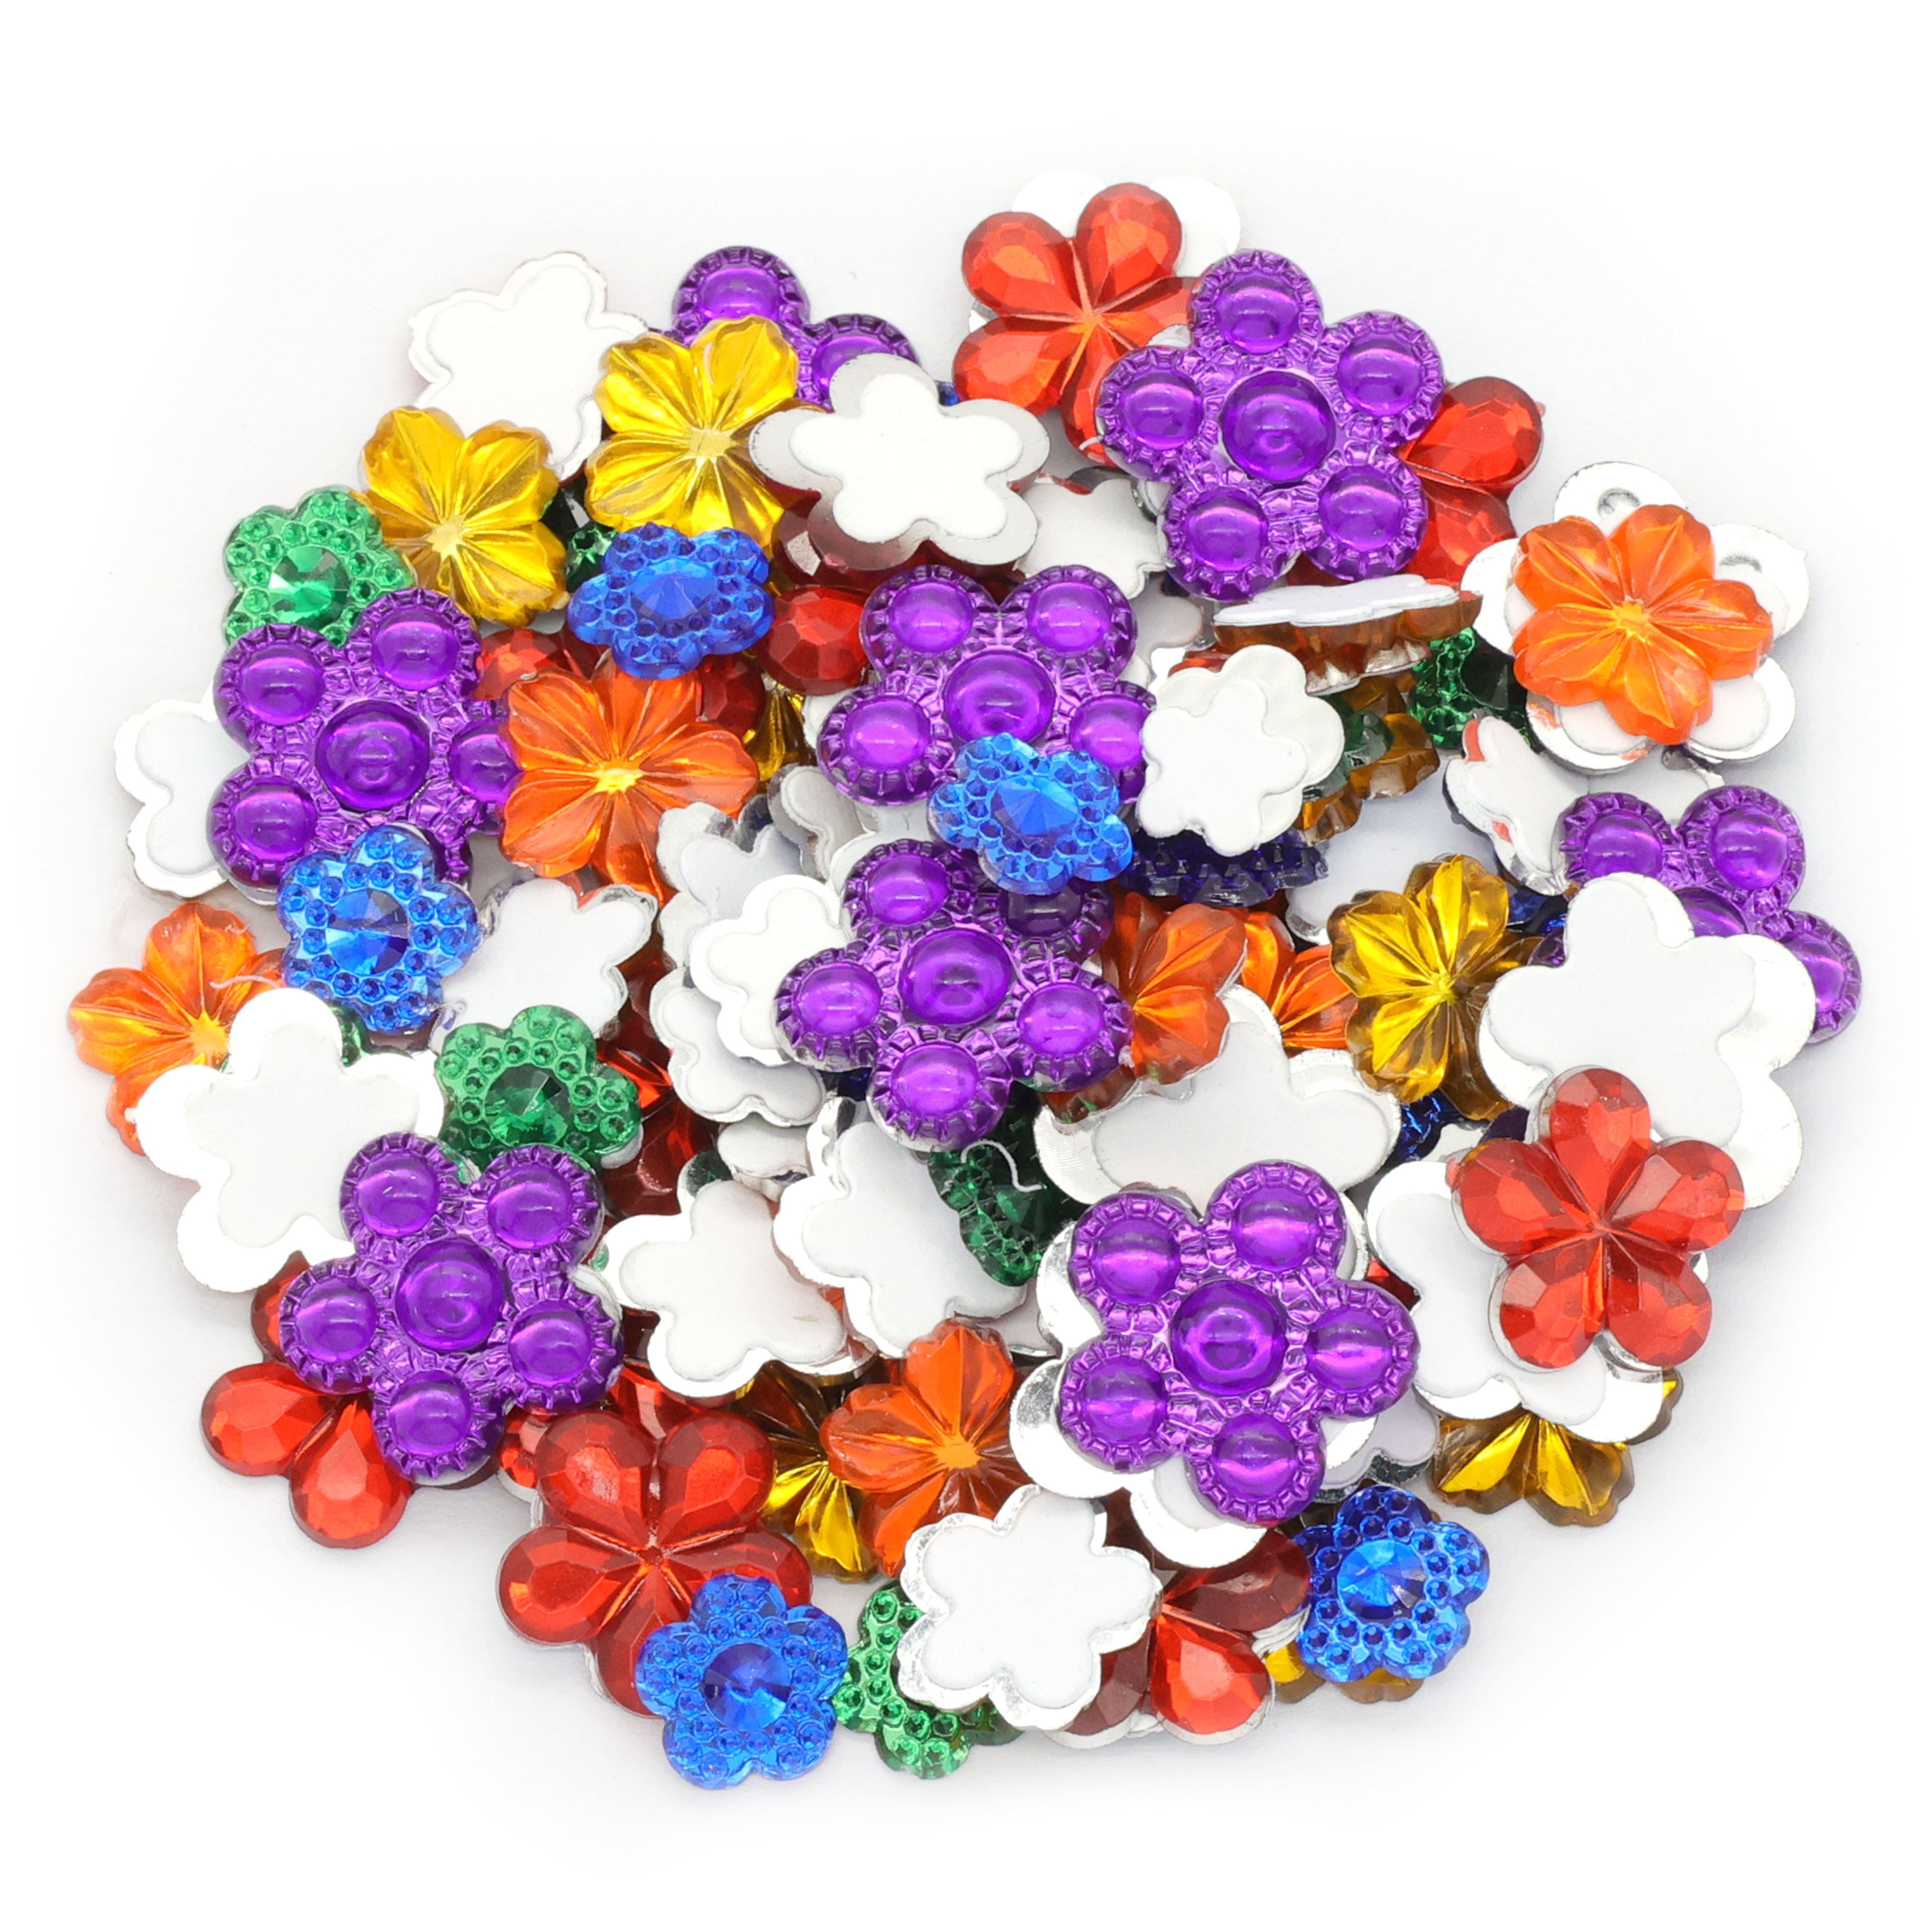 Flower Sticky Gems by Creatology™